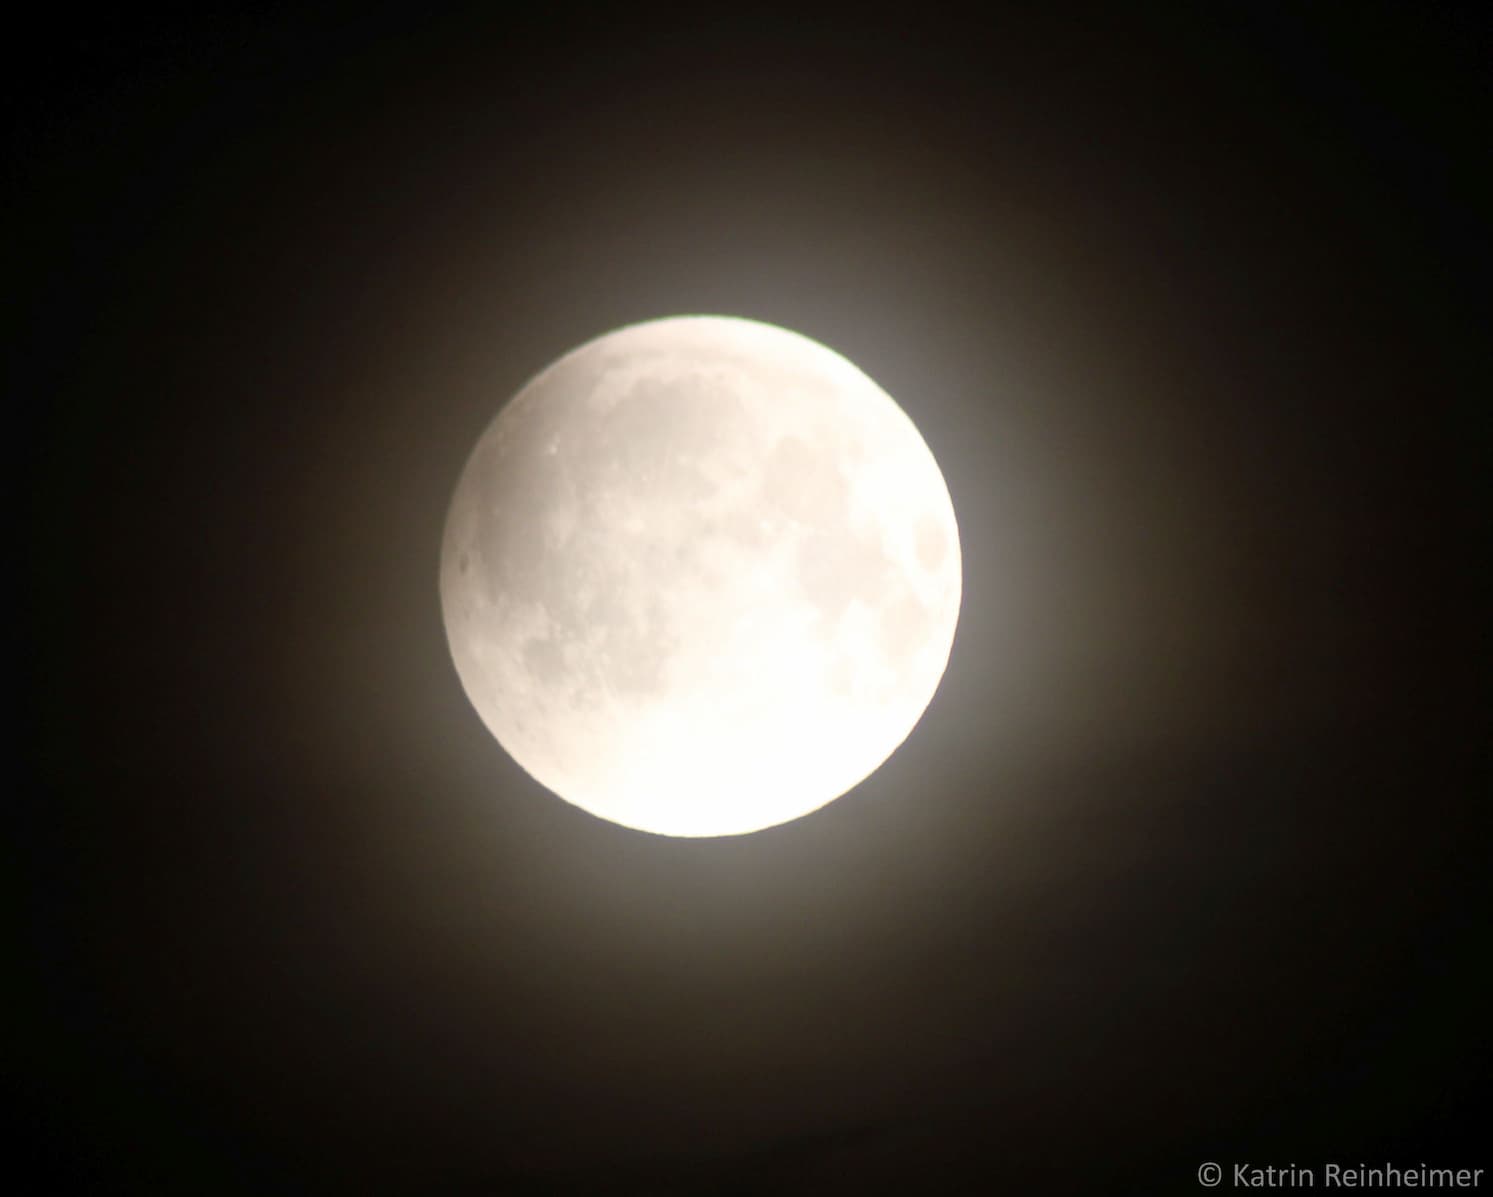 Mondfinsternis am 16.5.22: Der Mond befindet sich vollständig im Halbschatten der Erde, links oben ist bereits der Kernschatten zu erahnen